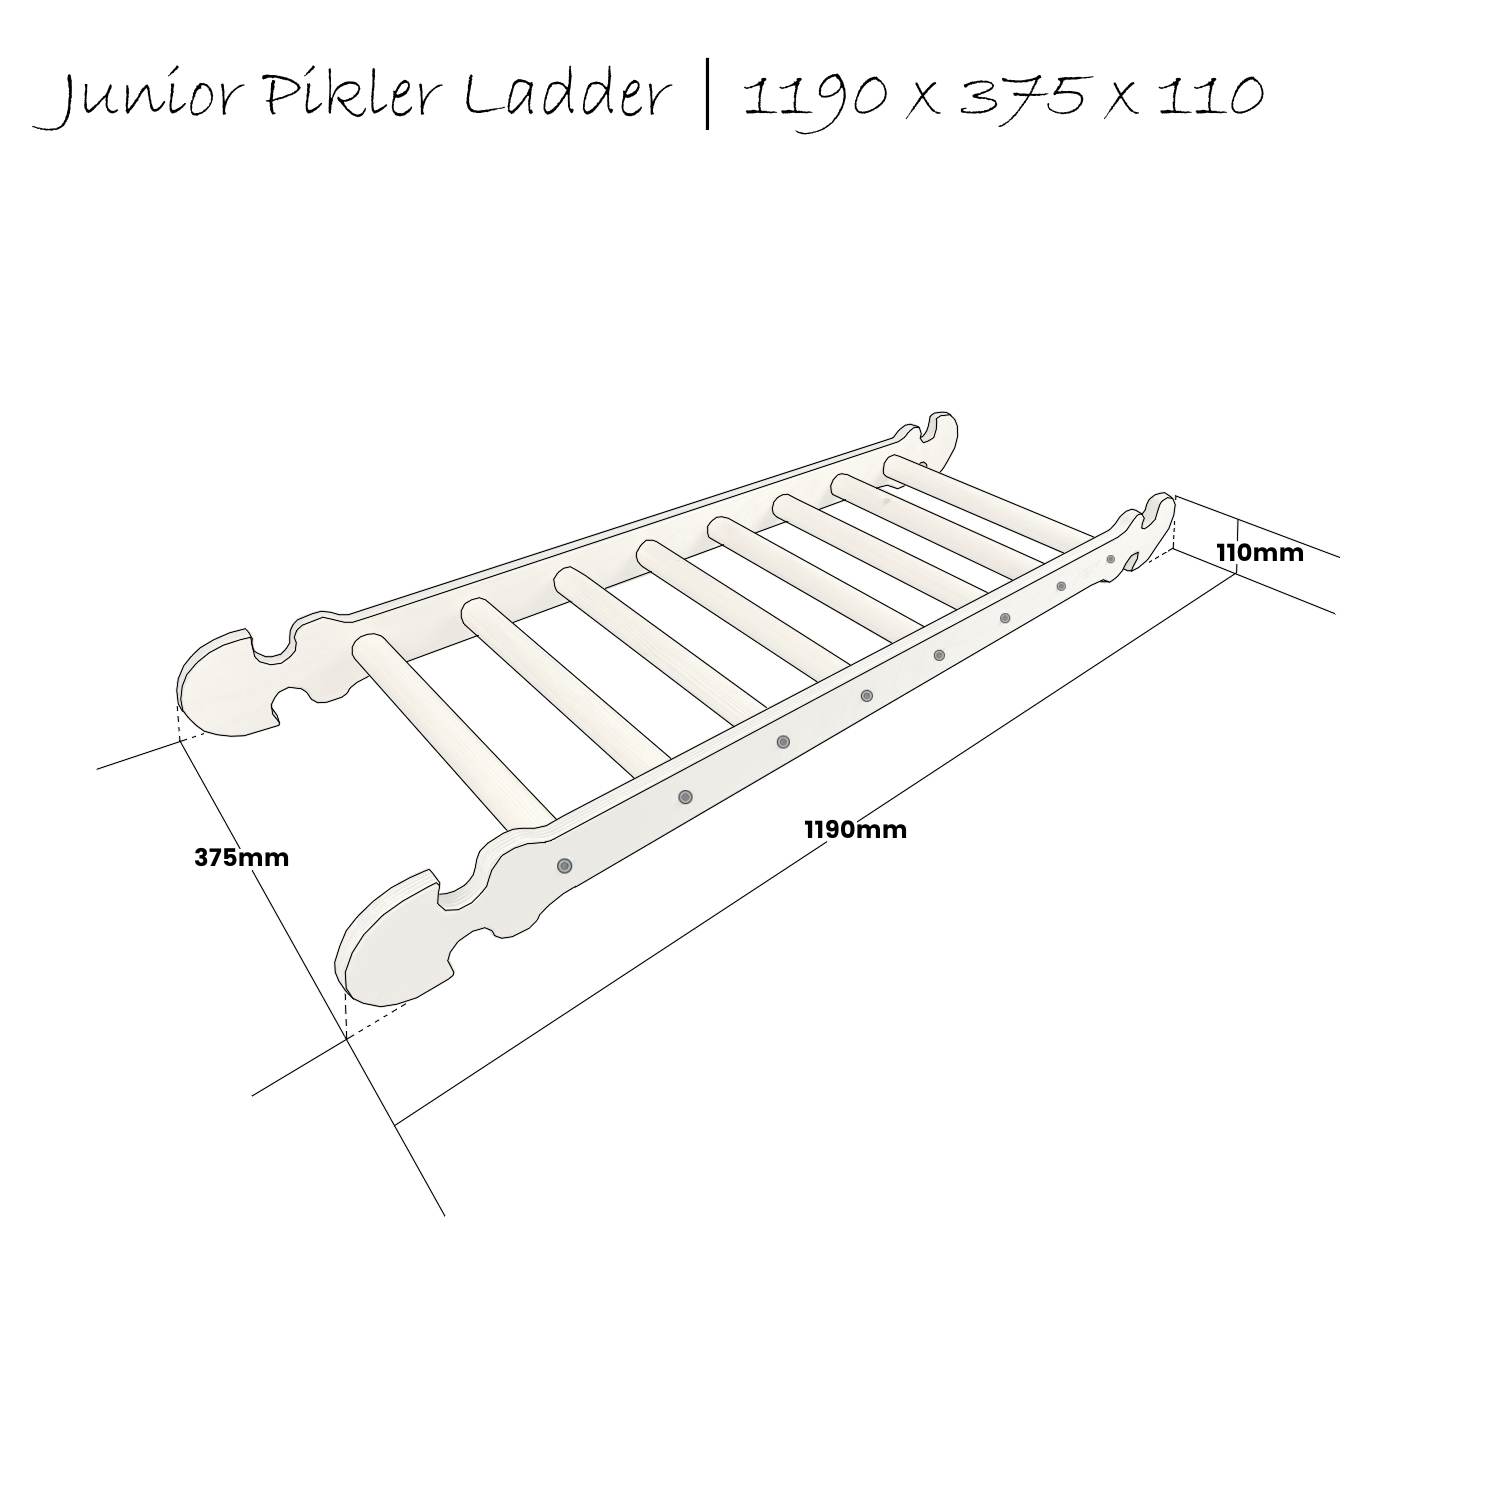 Junior Pikler ladder Schematic 1190x375x110